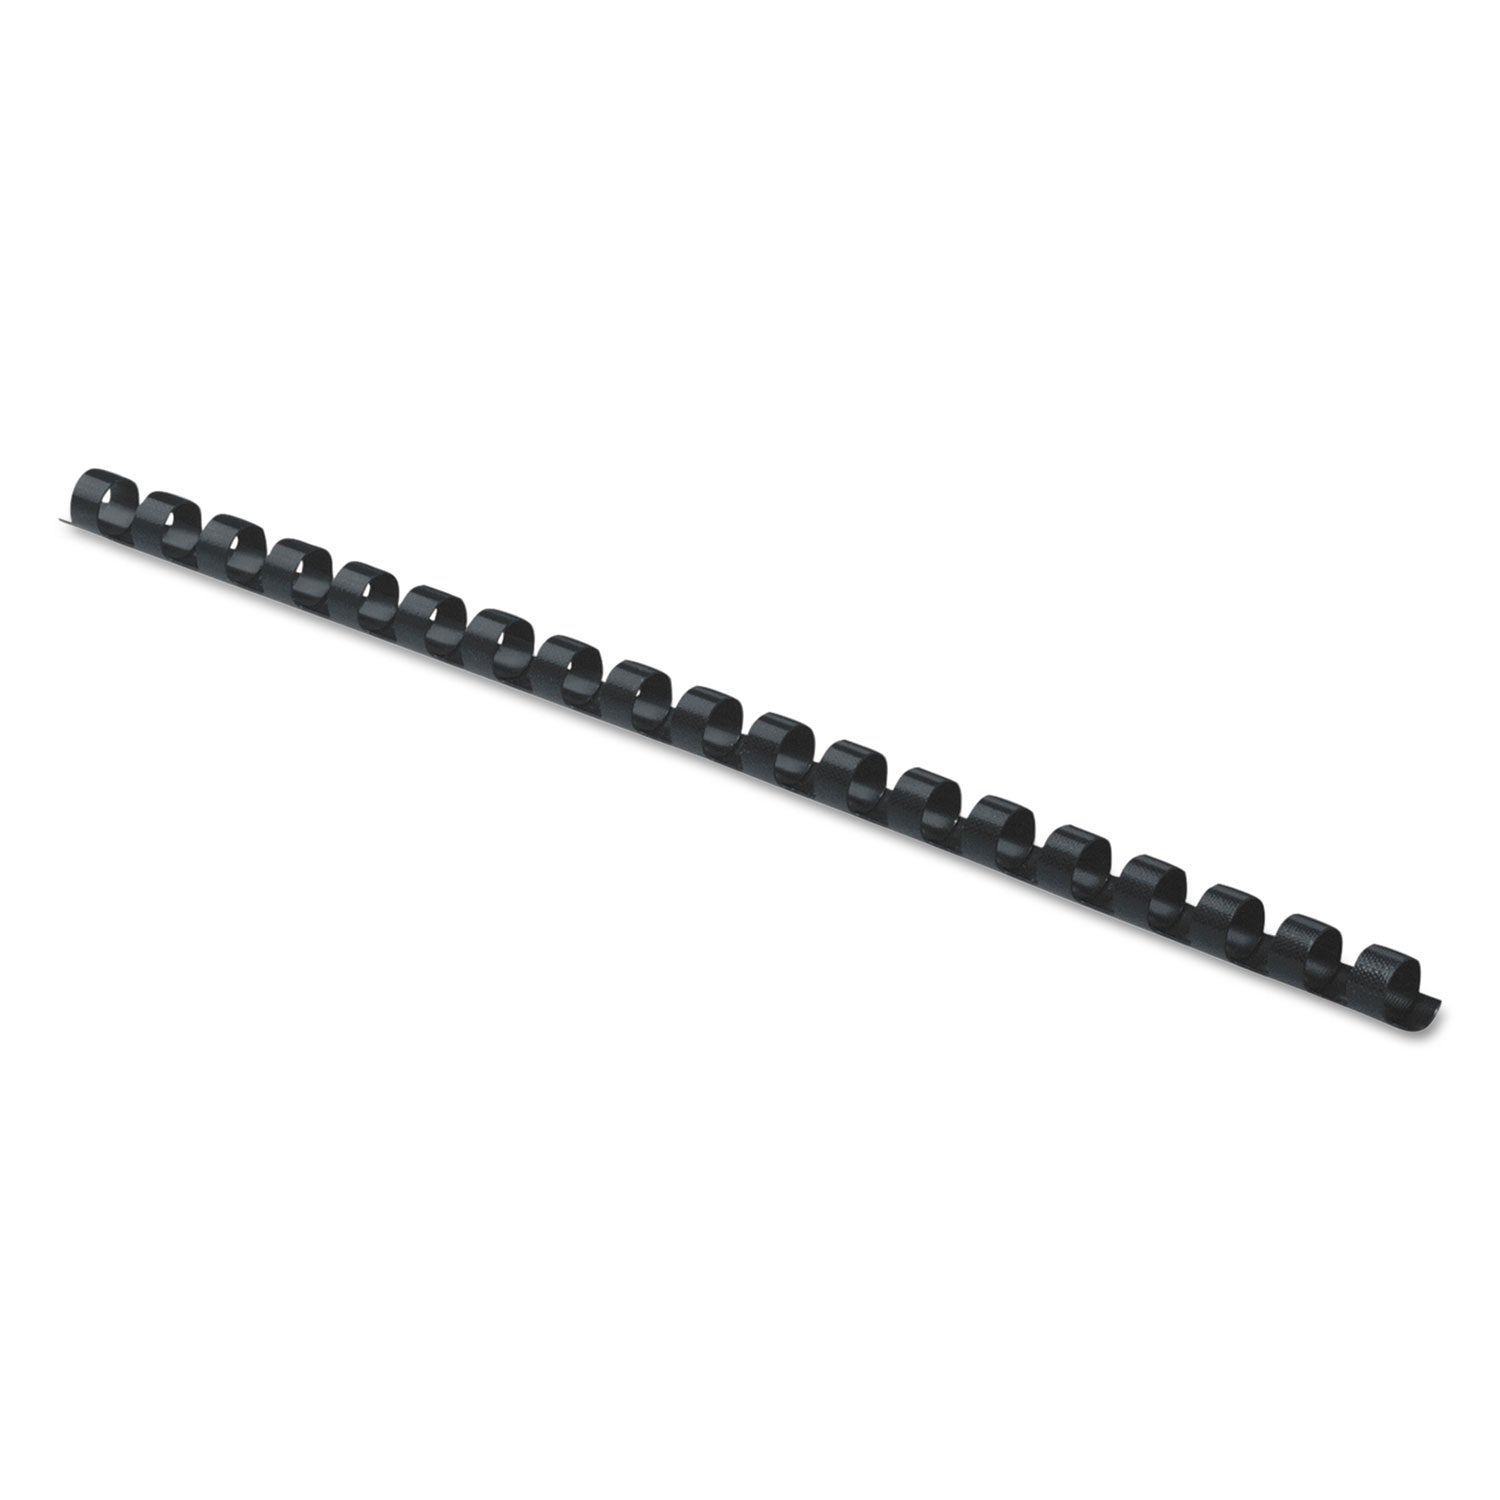 Plastic Comb Bindings, 1/4" Diameter, 20 Sheet Capacity, Black, 100/Pack - 